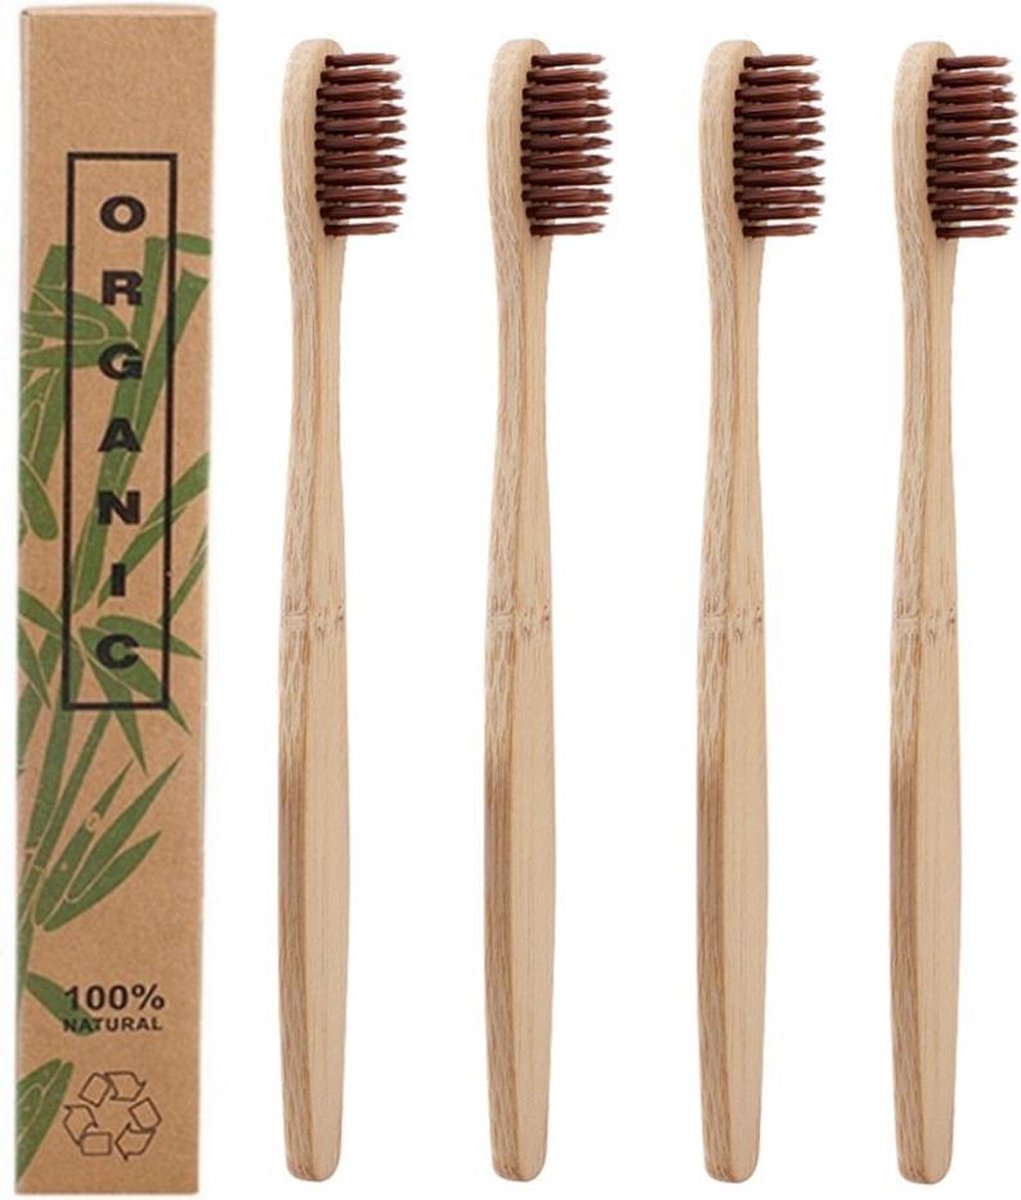 Bamboe Tandenborstels |Set Van 4 Tandenborstels | Medium soft | Biologisch Afbreekbaar | Bruin